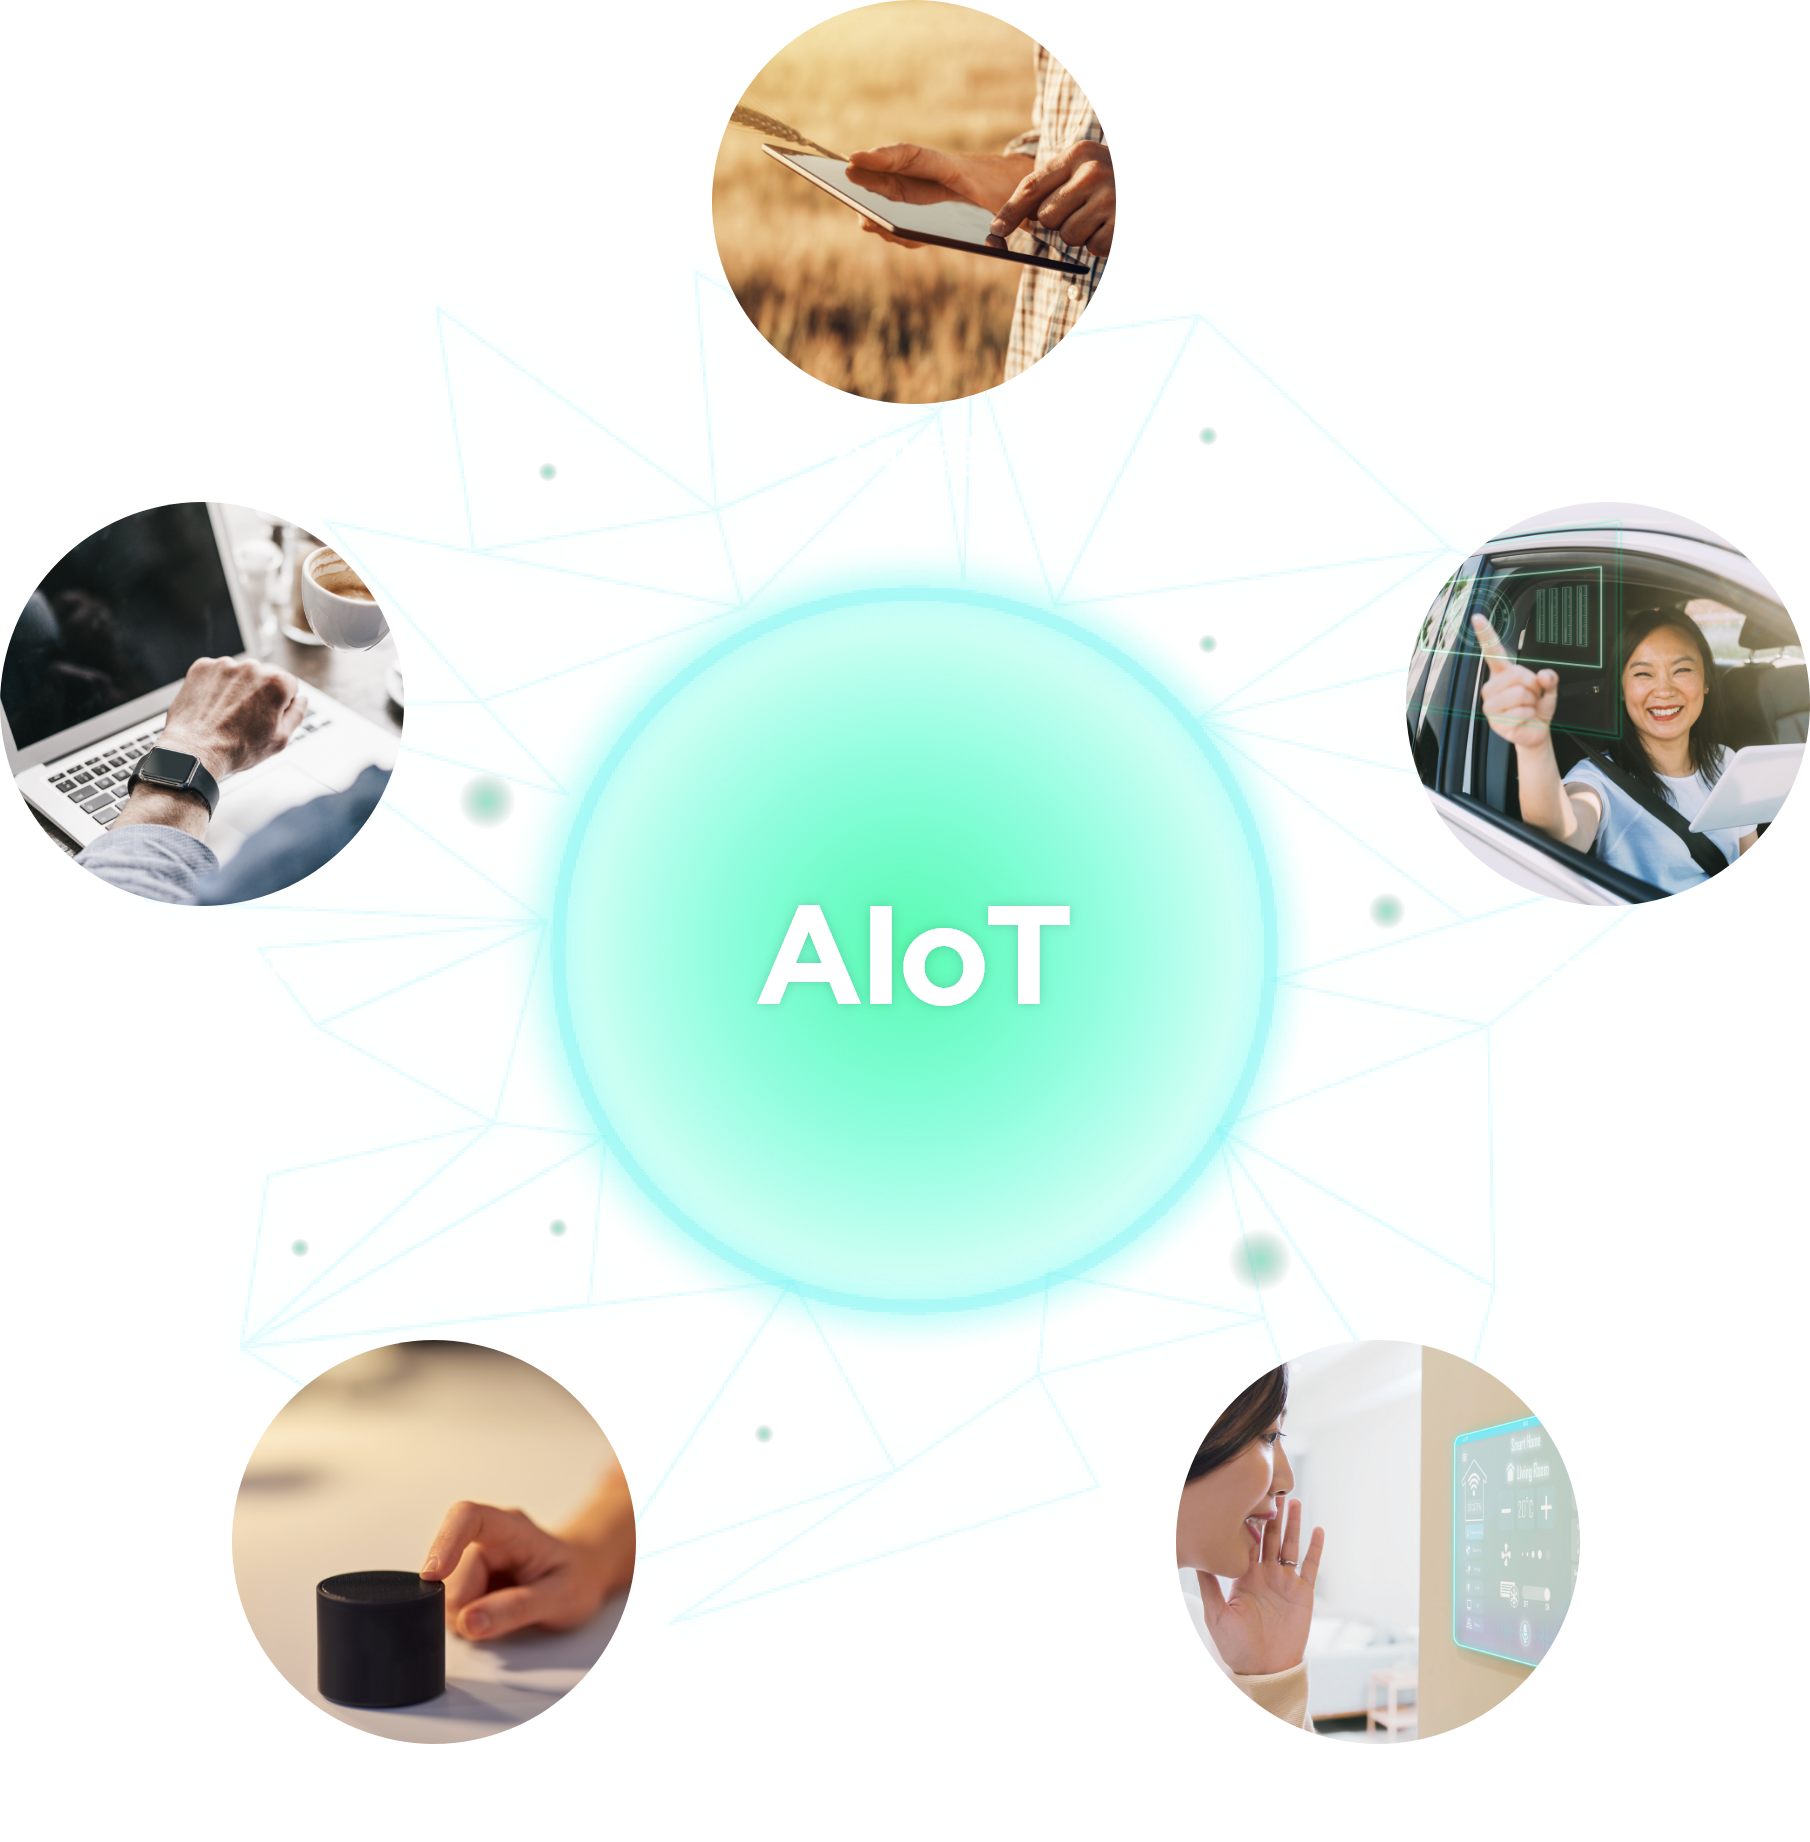 AIoT-스마트팜, 자율주행 자동차, 스마트워치, AI 스피커, 스마트 가전제품